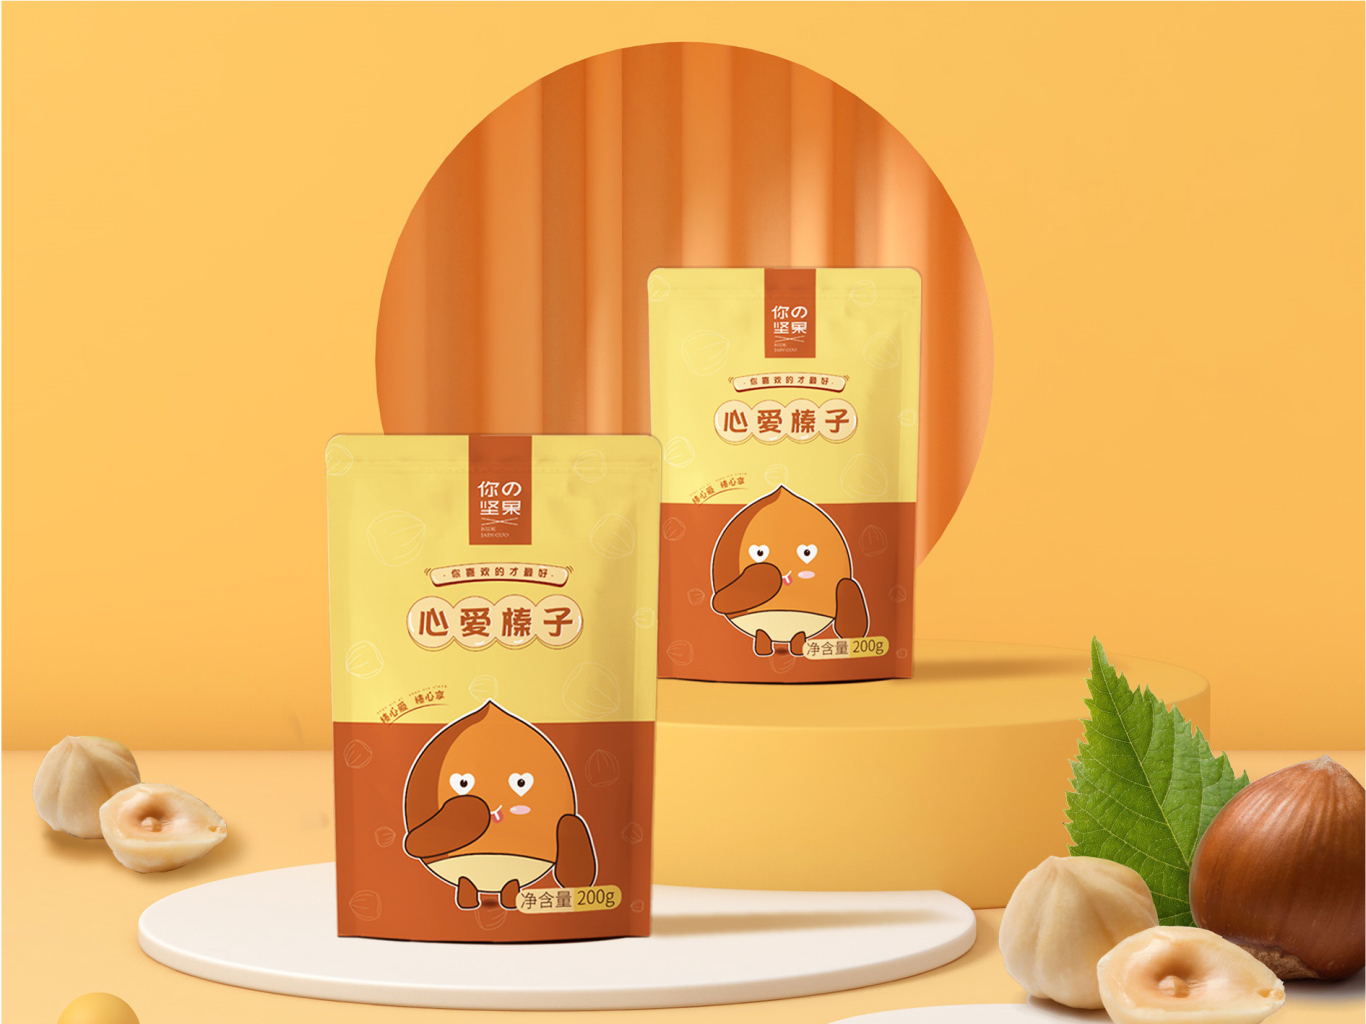 堅果包裝設計-食品包裝設計-零食包裝設計-包裝設計圖14